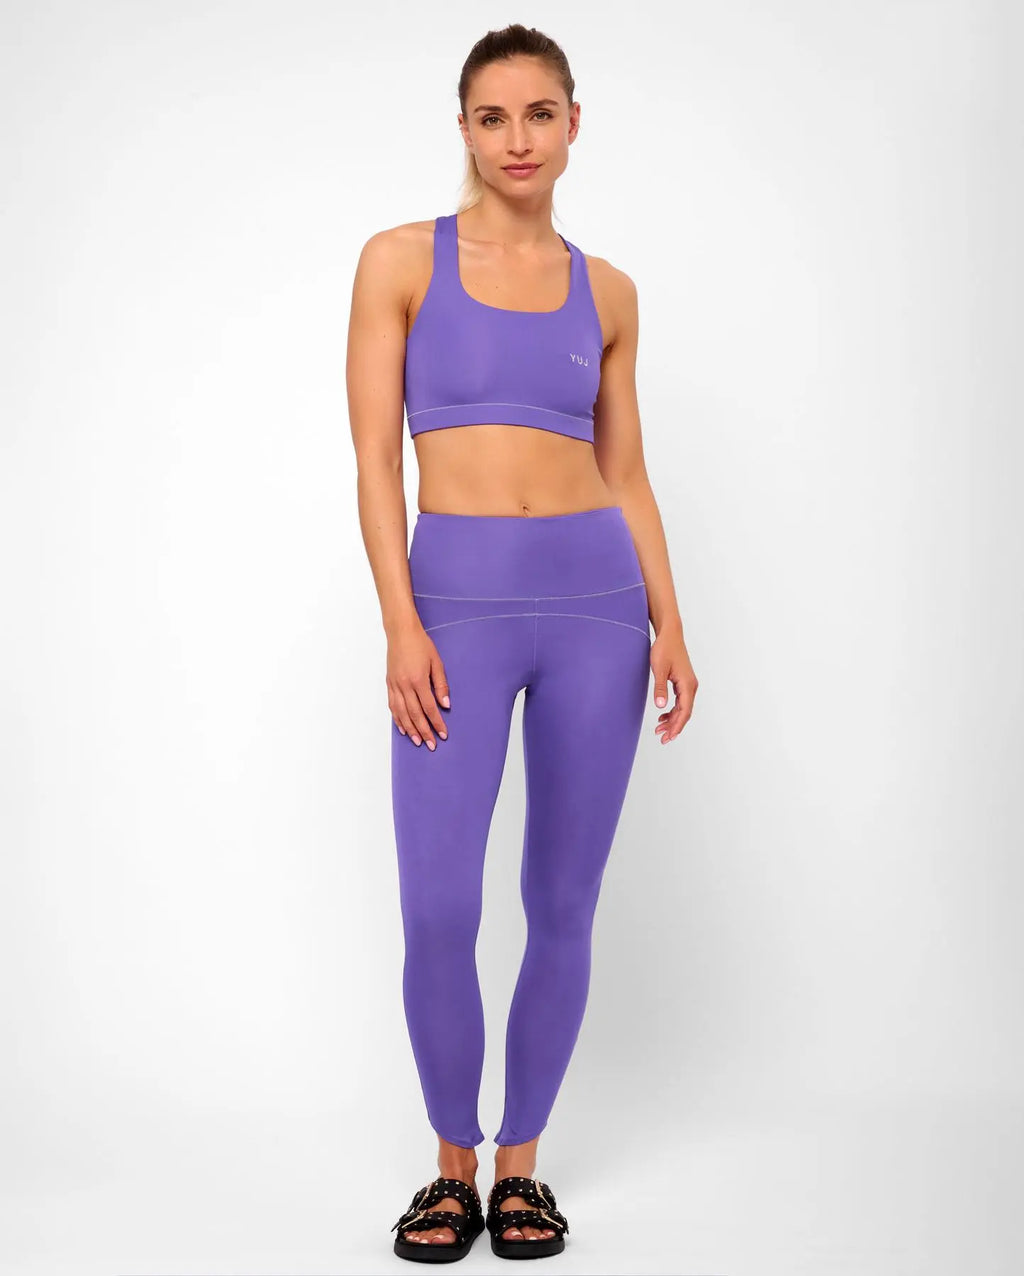 Brassière de yoga purple BANDHA YUJ - Maison de pleine conscience